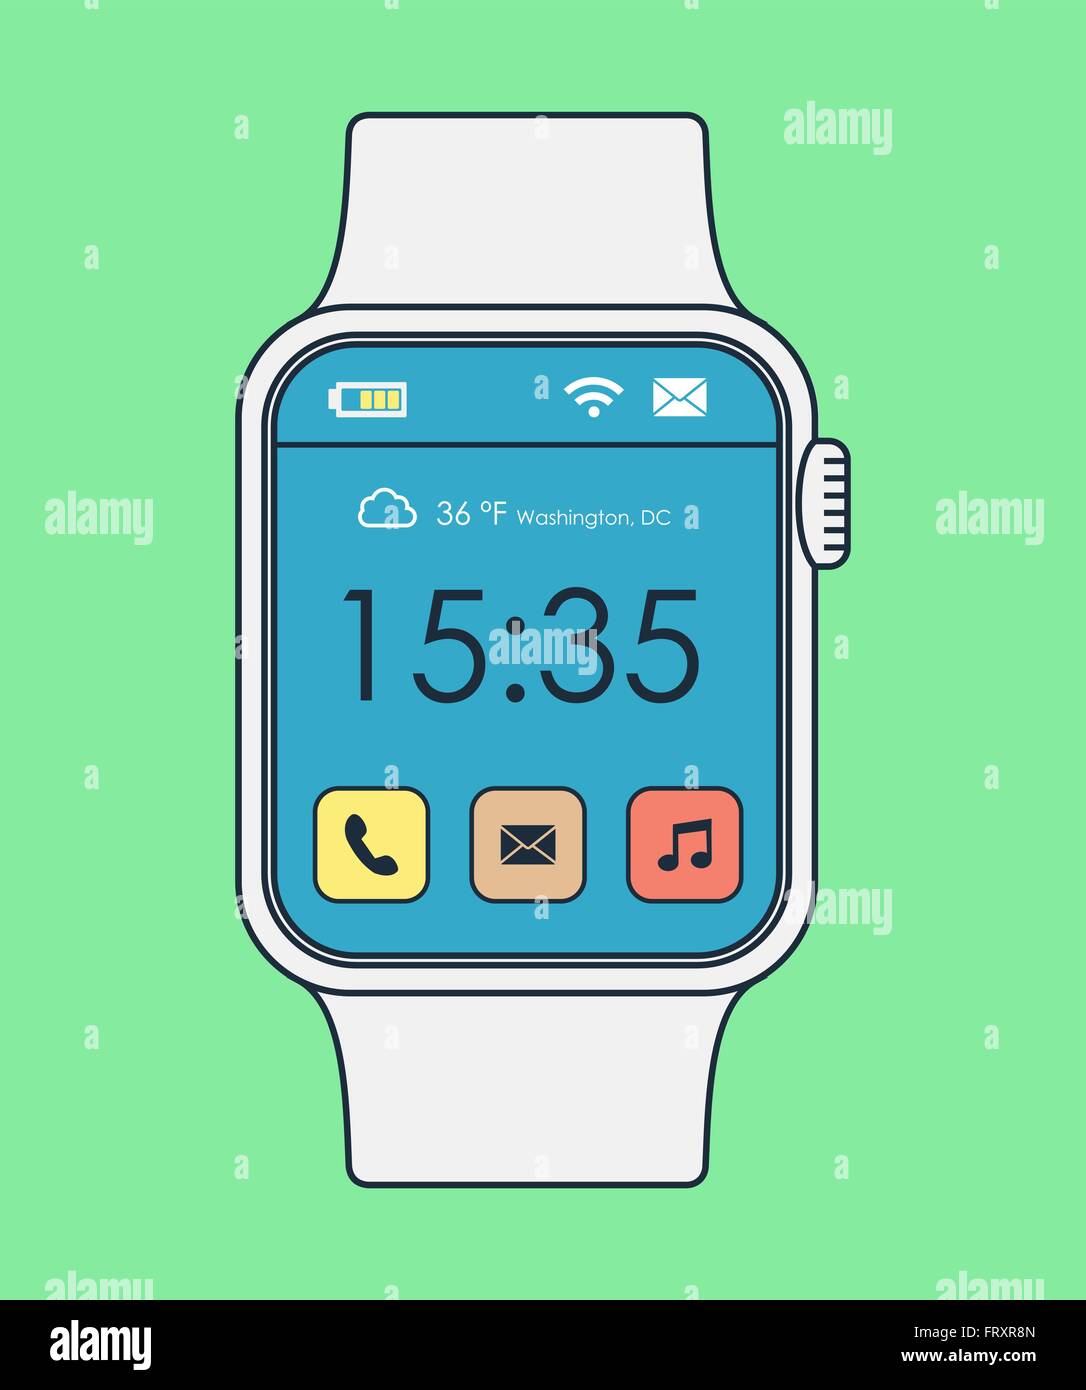 Smart watch illustration en ligne moderne de style art avec des icônes d'applications et l'affichage de l'heure. Vecteur EPS10. Illustration de Vecteur